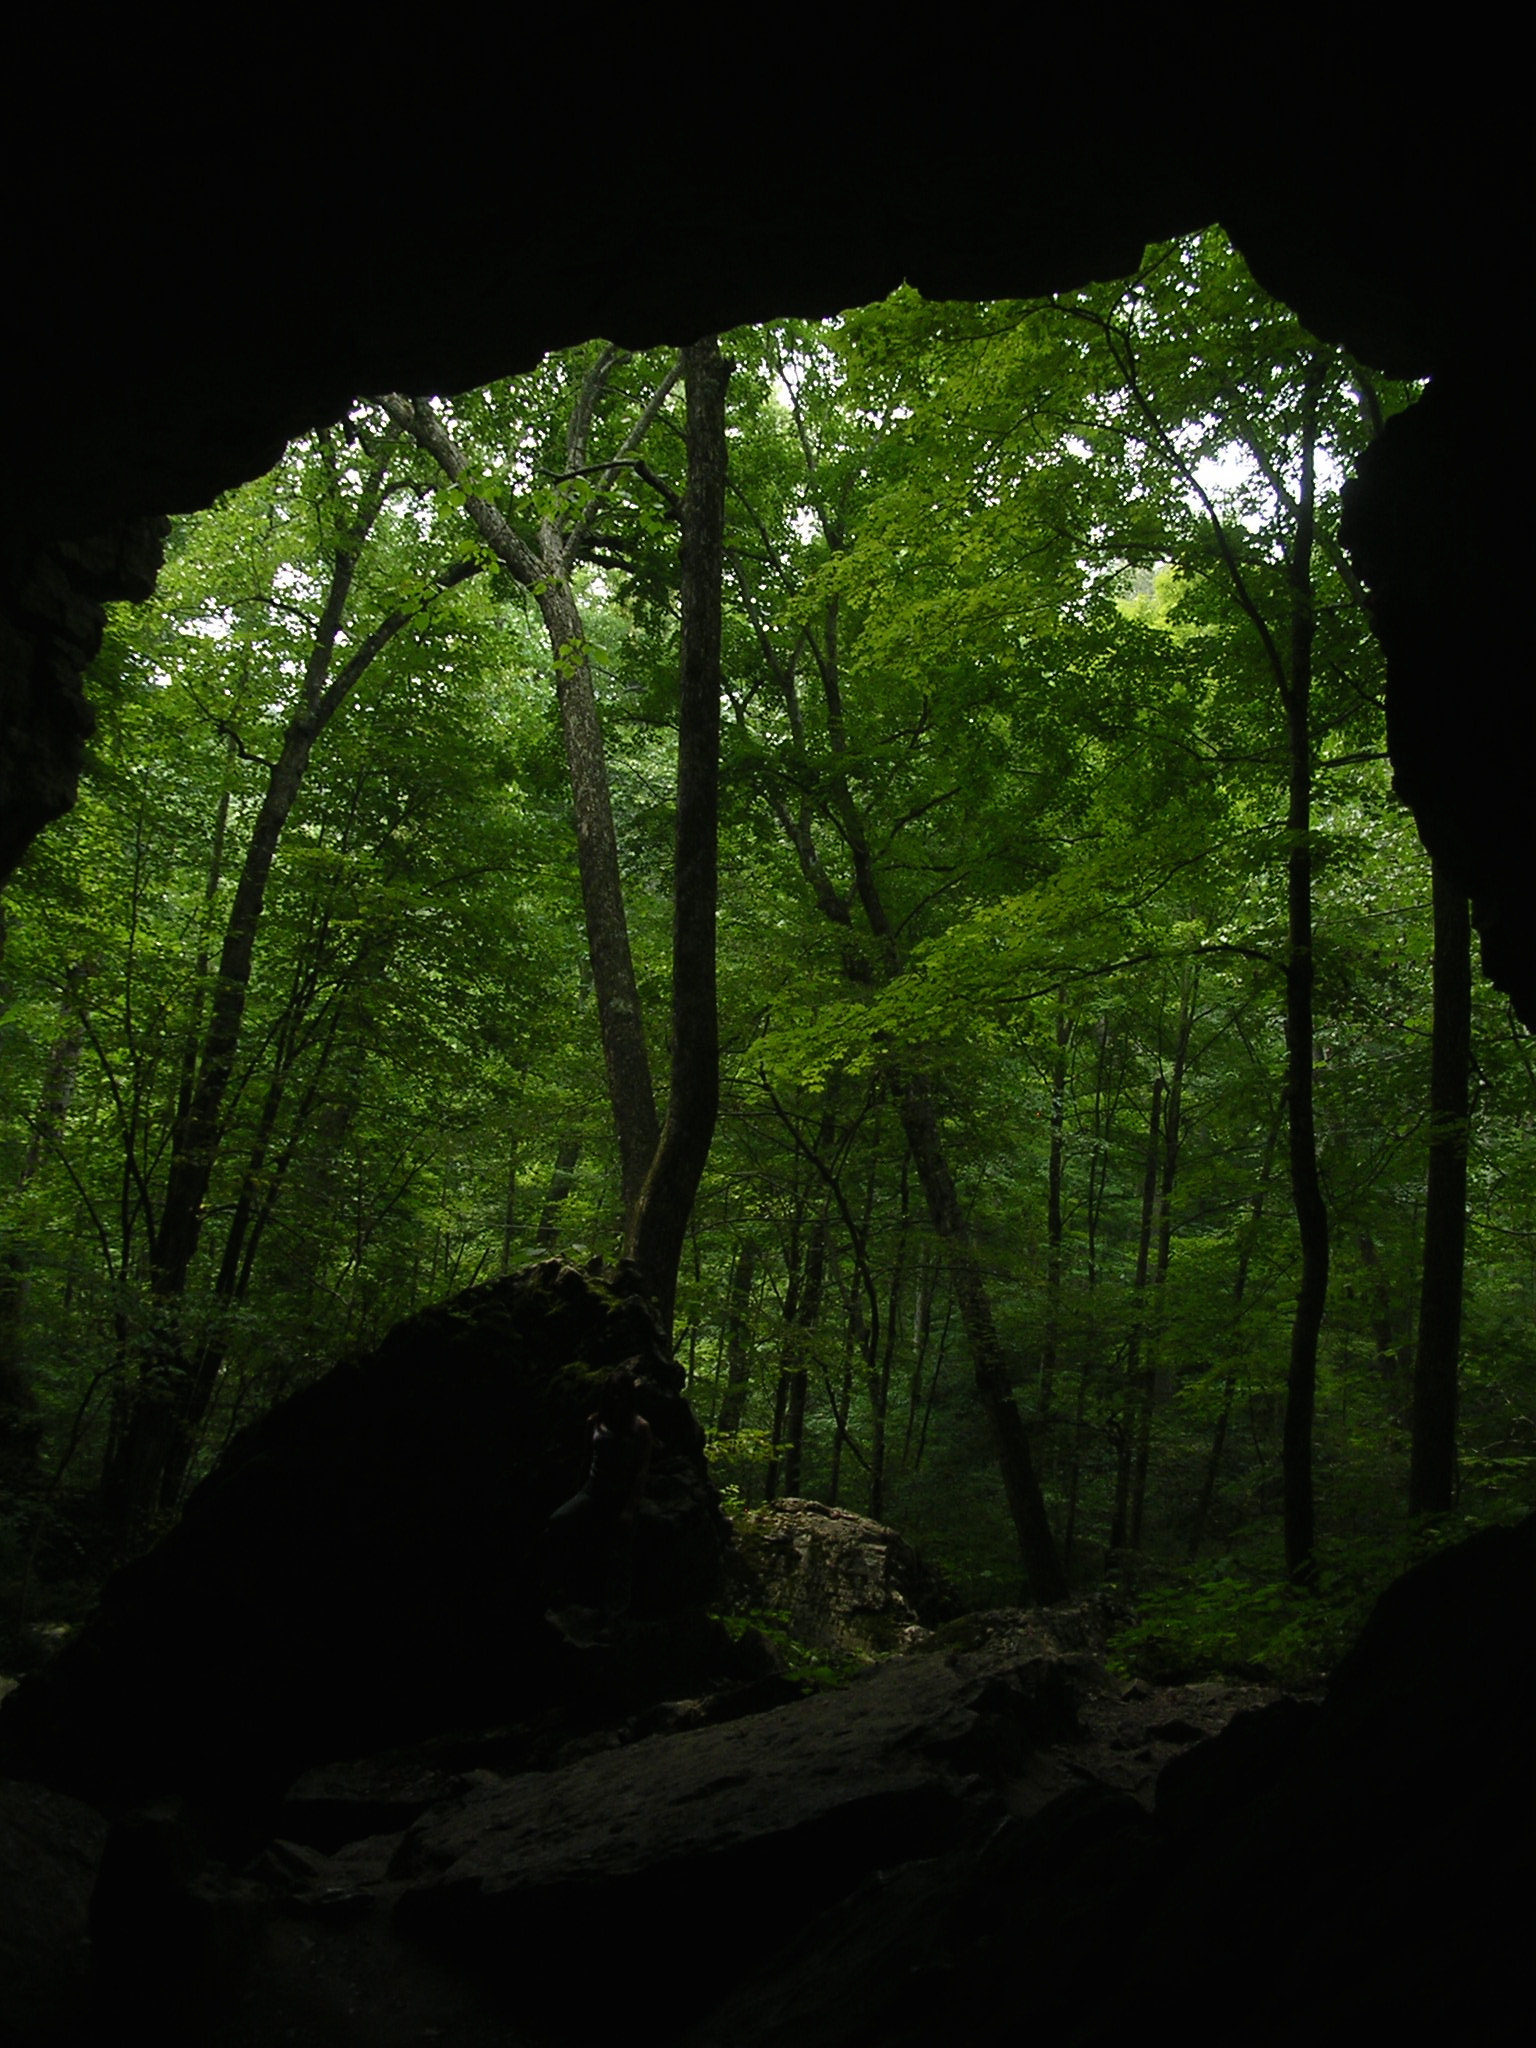 Nikon E3100 sample photo. Carter caves, kentucky photography